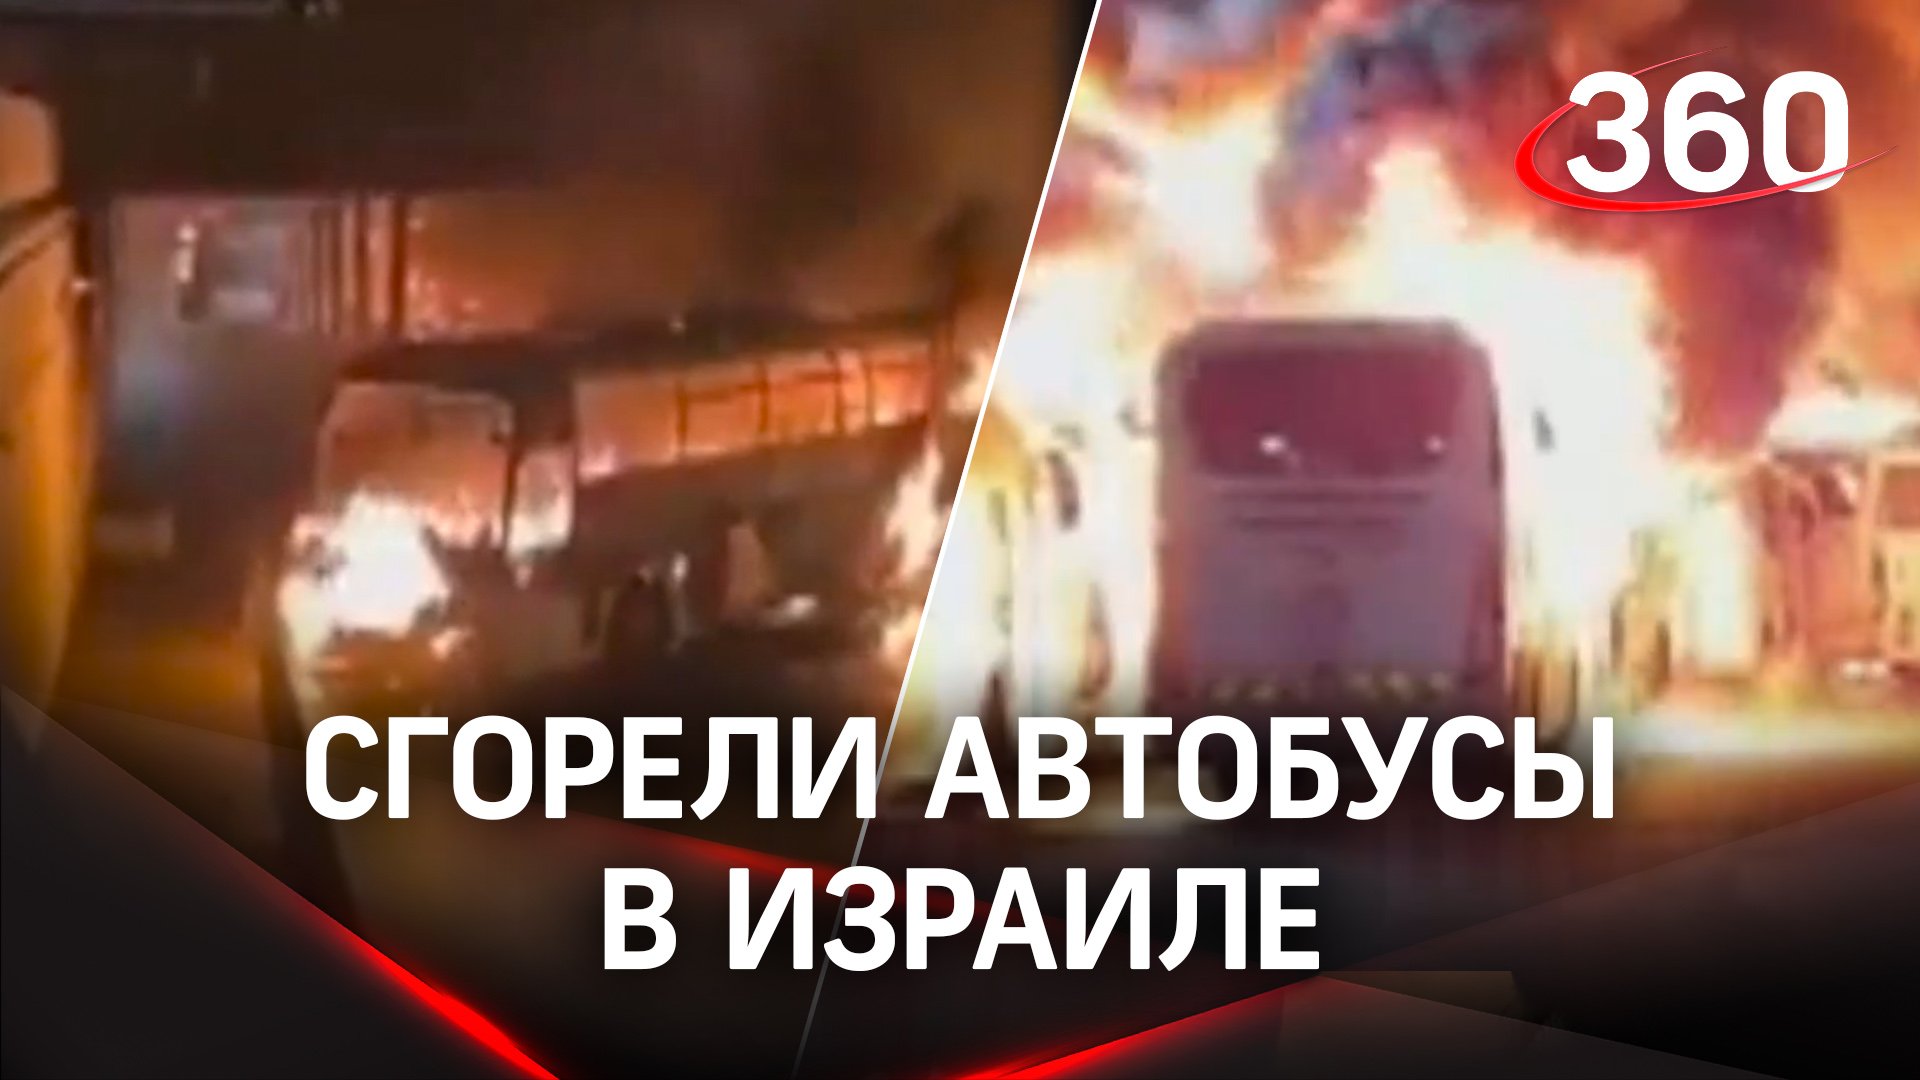 На таком не прокатишься: в Израиле сгорели автобусы